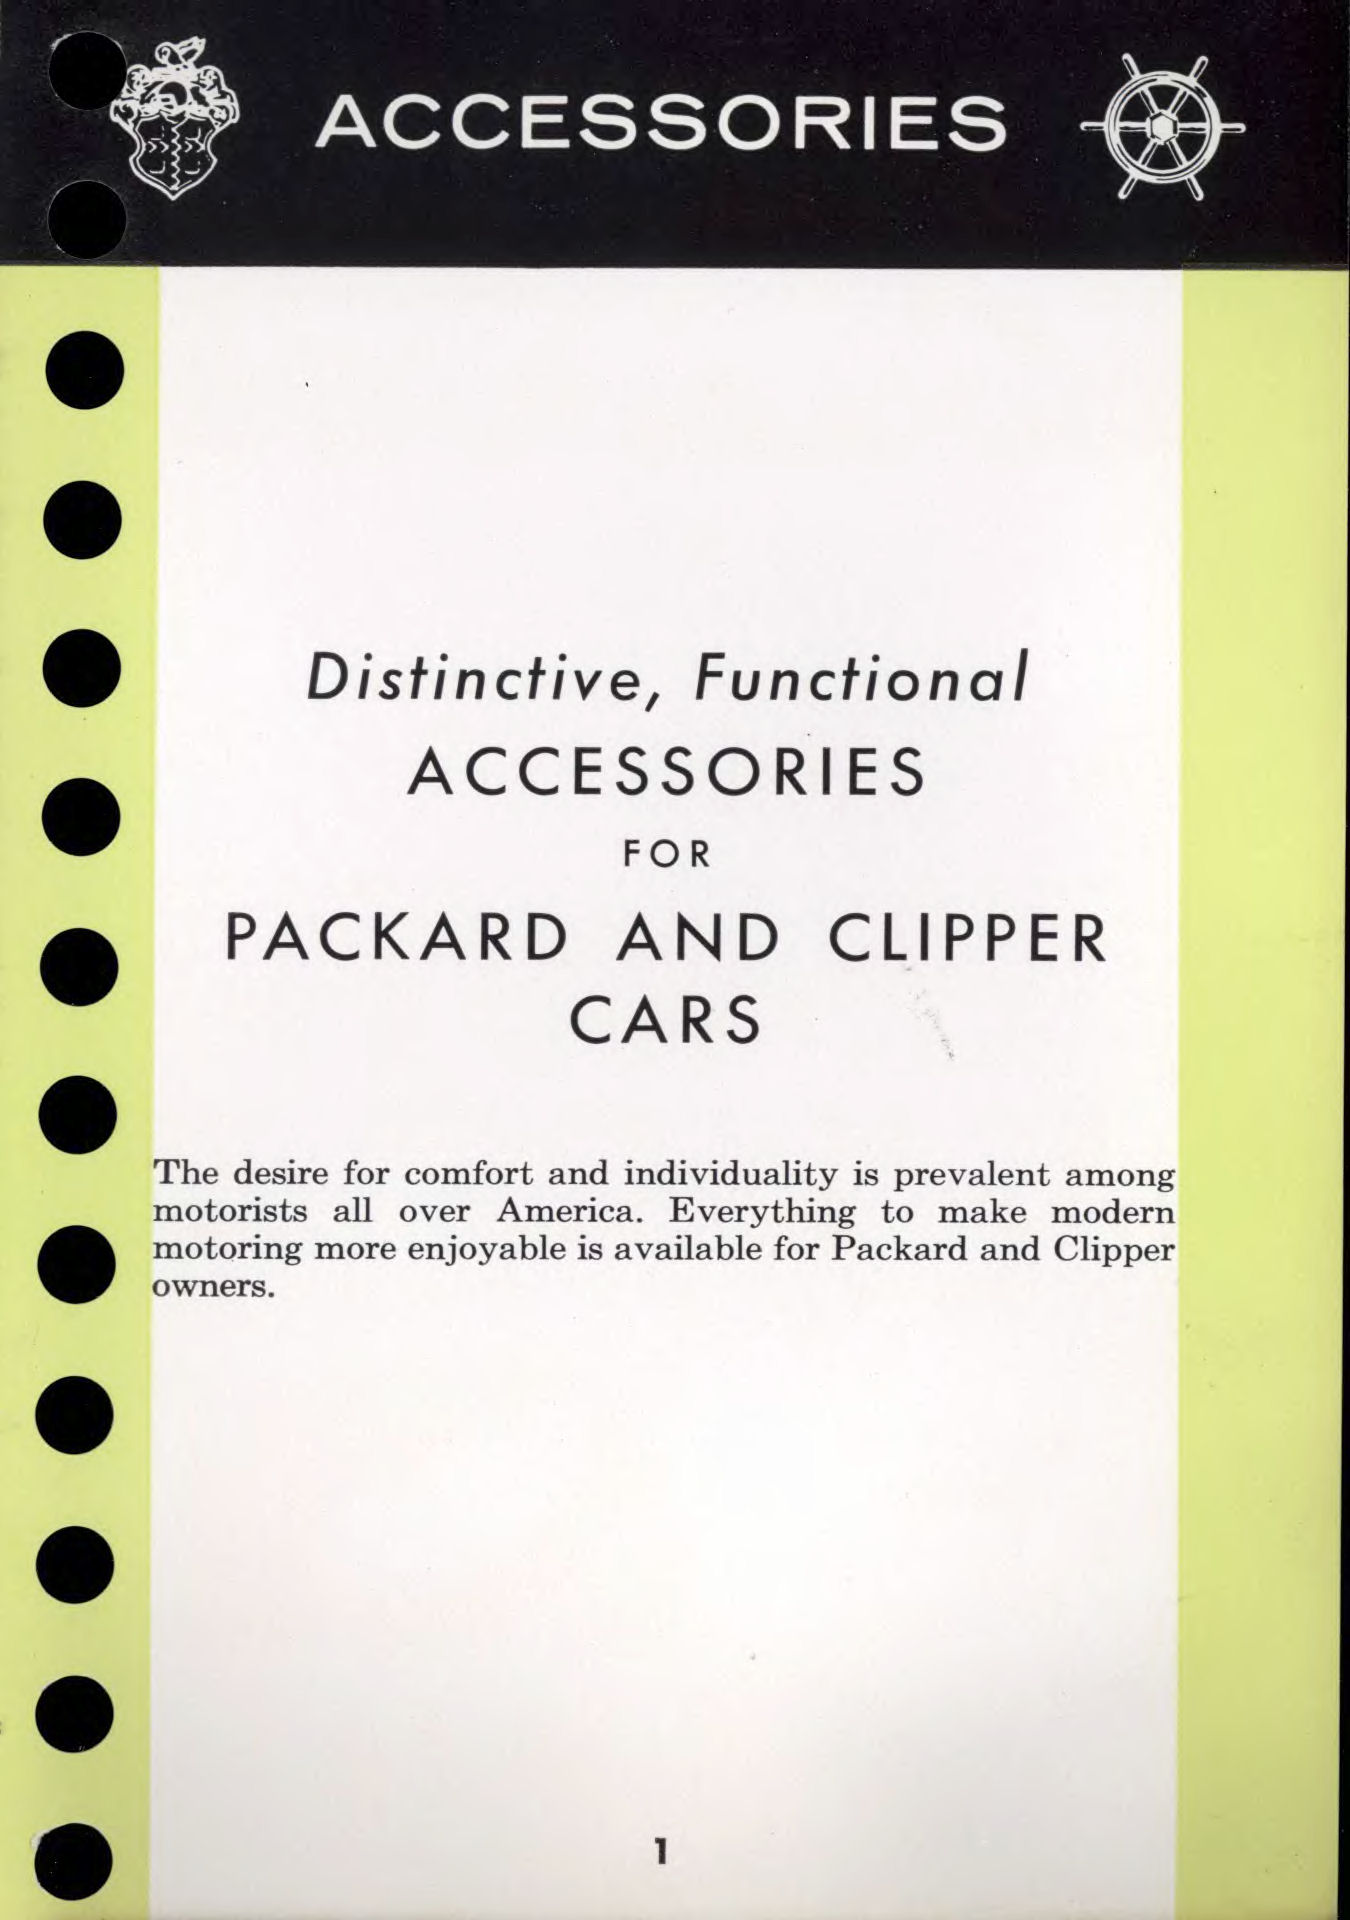 1956 Packard Data Book-ji01